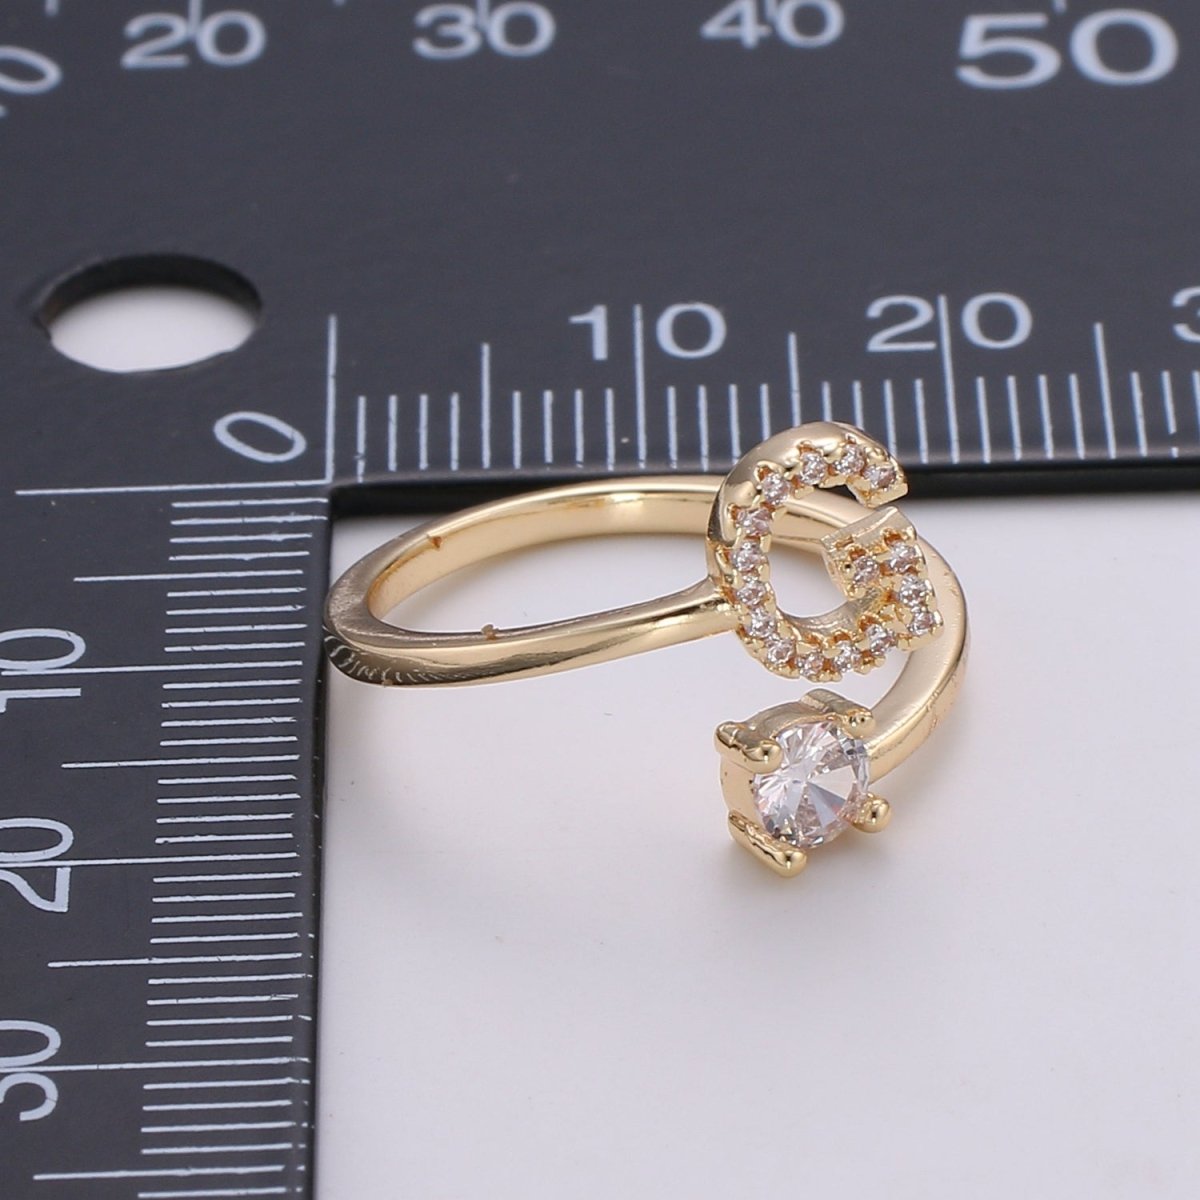 Coil Spiral Initial Letter Ring, Bezel Set Diamond Gold Gold Coil Ring,  Alphapet Custom Letter Ring, Personalized Birthday Gift for Her - Etsy